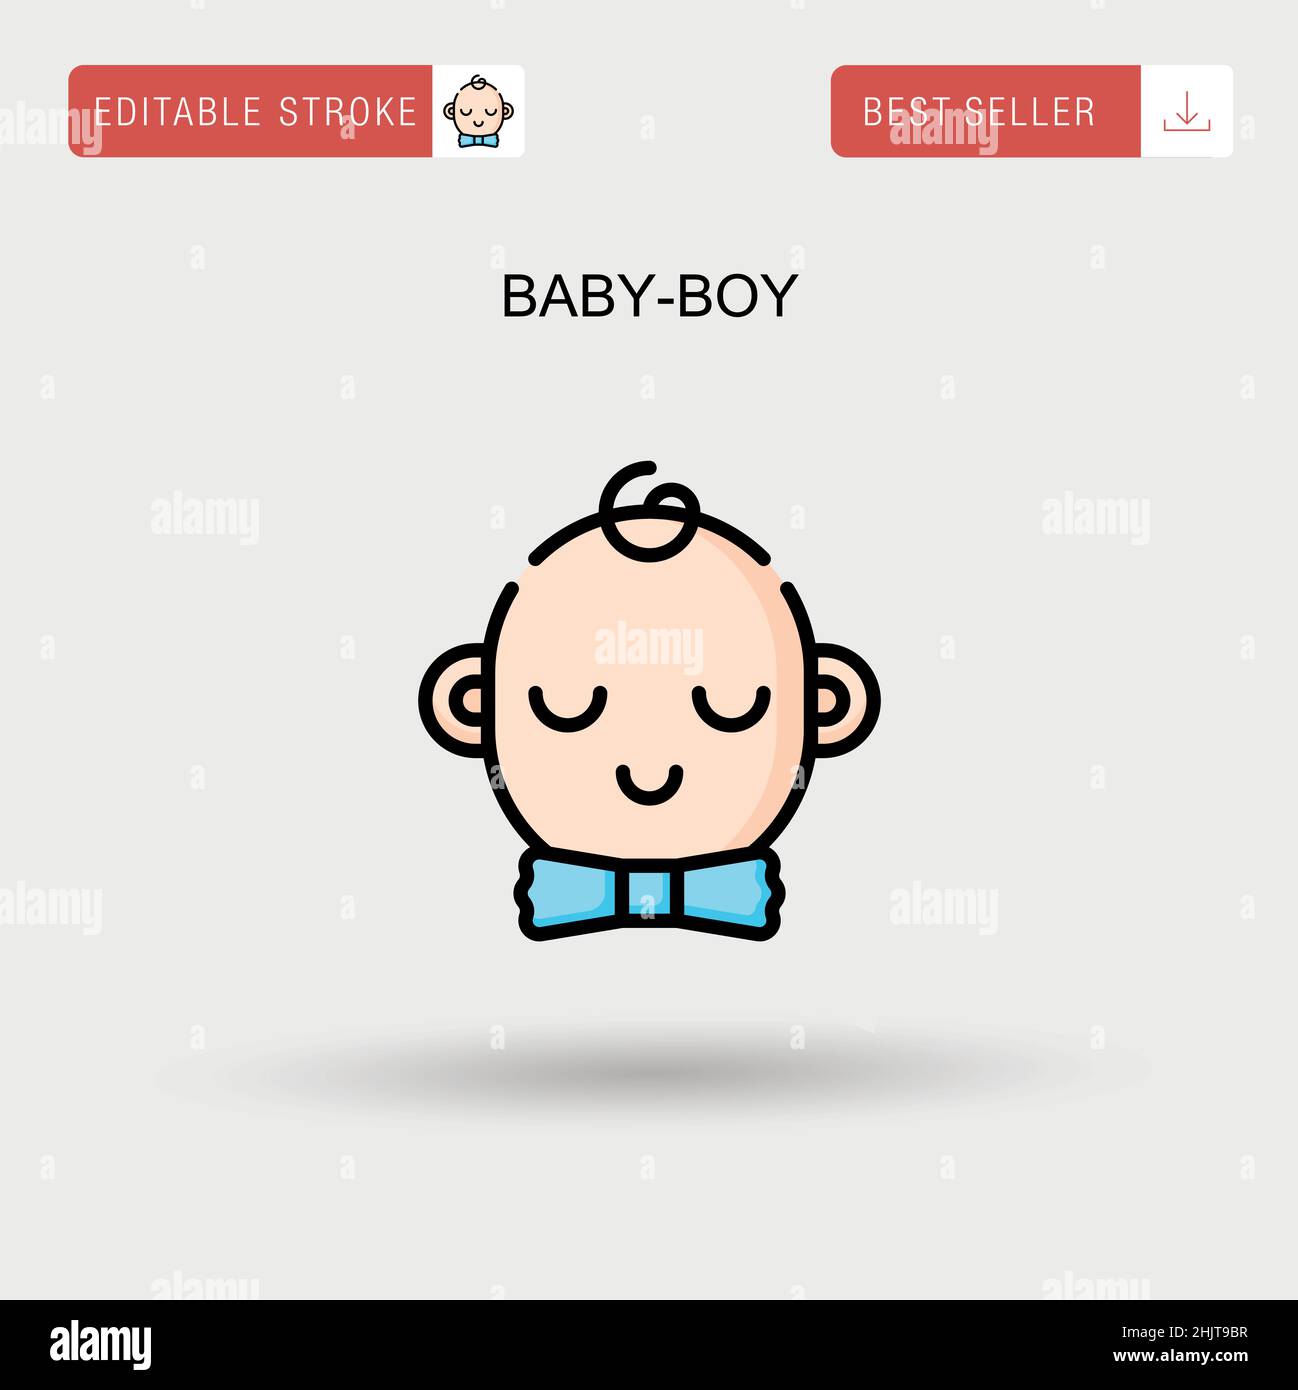 Baby-boy Simple vector icon. Stock Vector